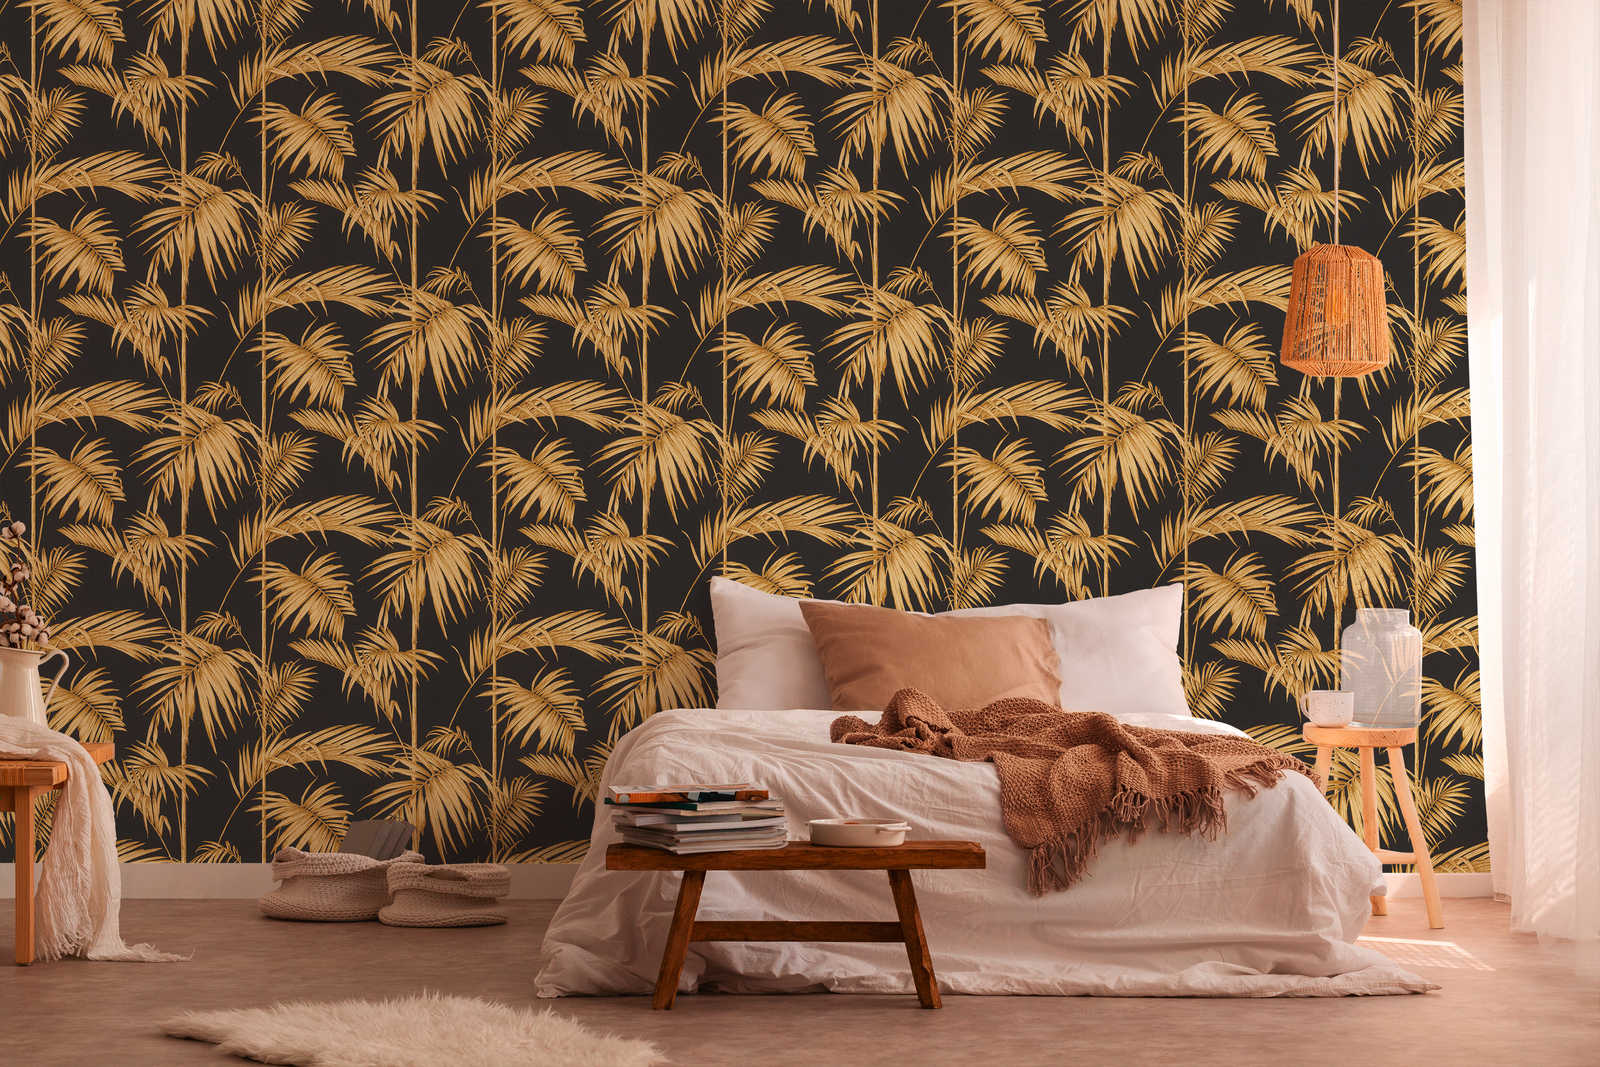             Natürliche Tapete Palmenblätter, Bambus – Gold, Schwarz, Orange
        